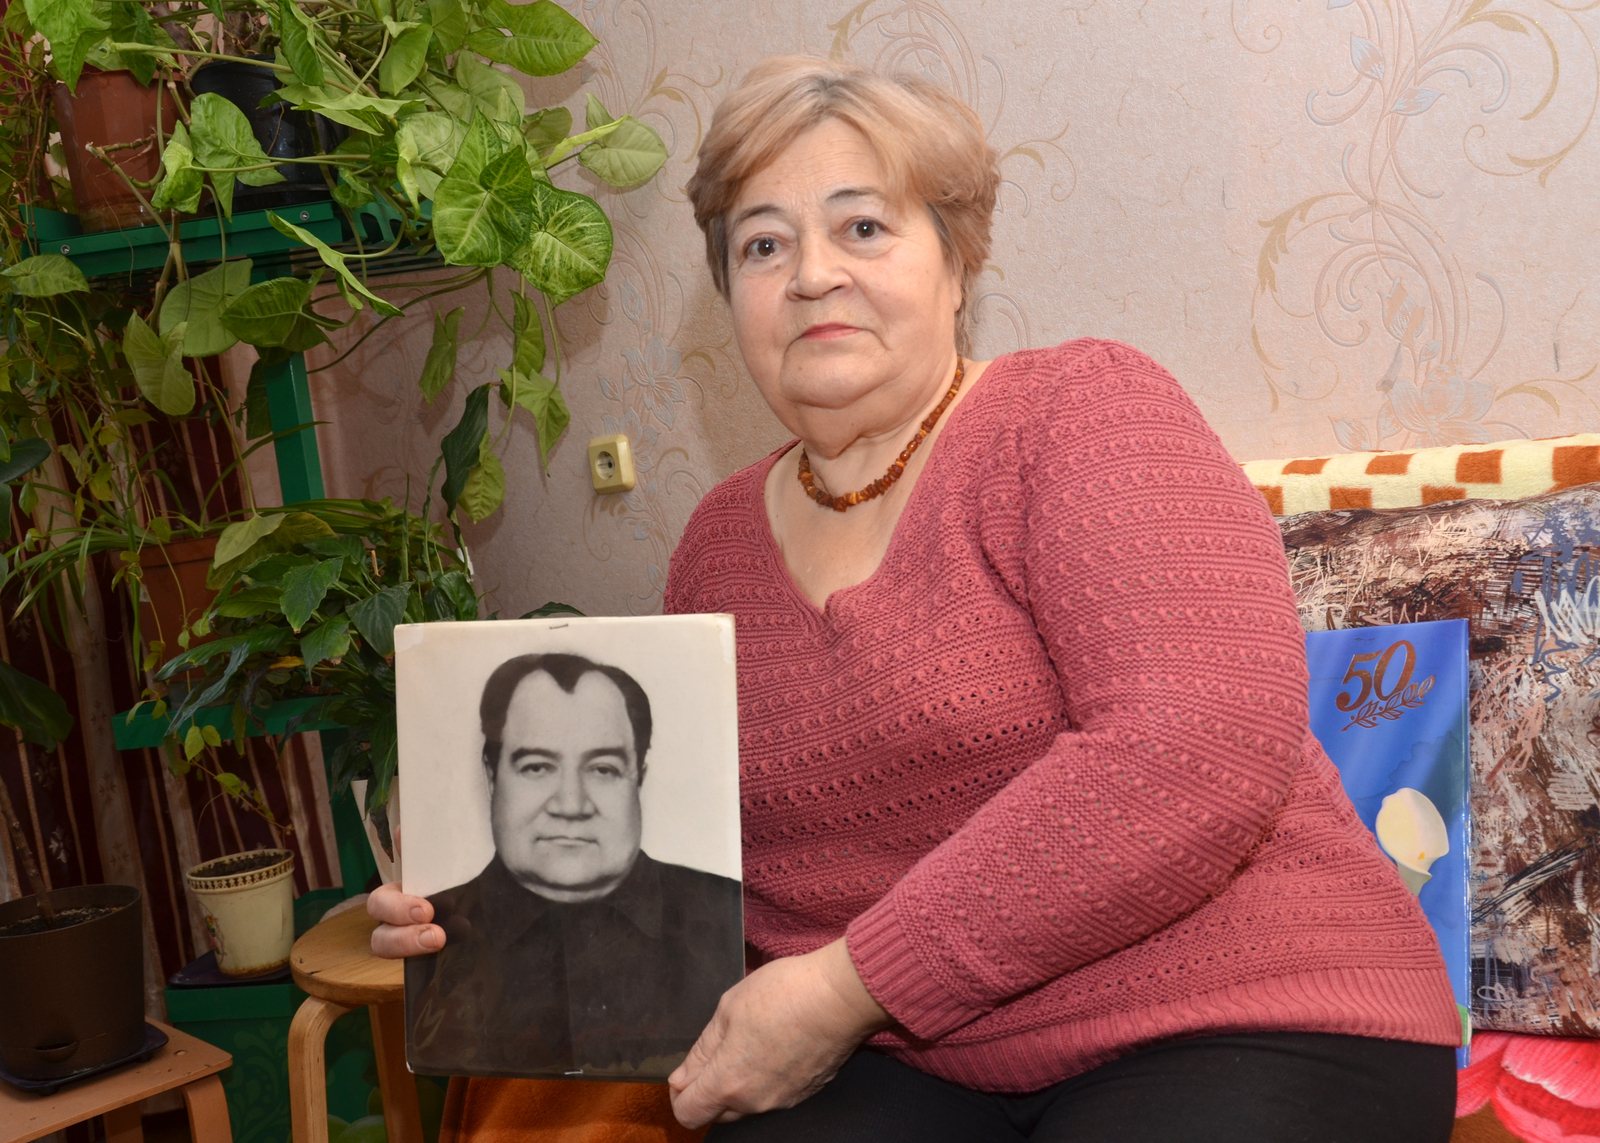 Людмила свято хранит память об отце-фронтовике